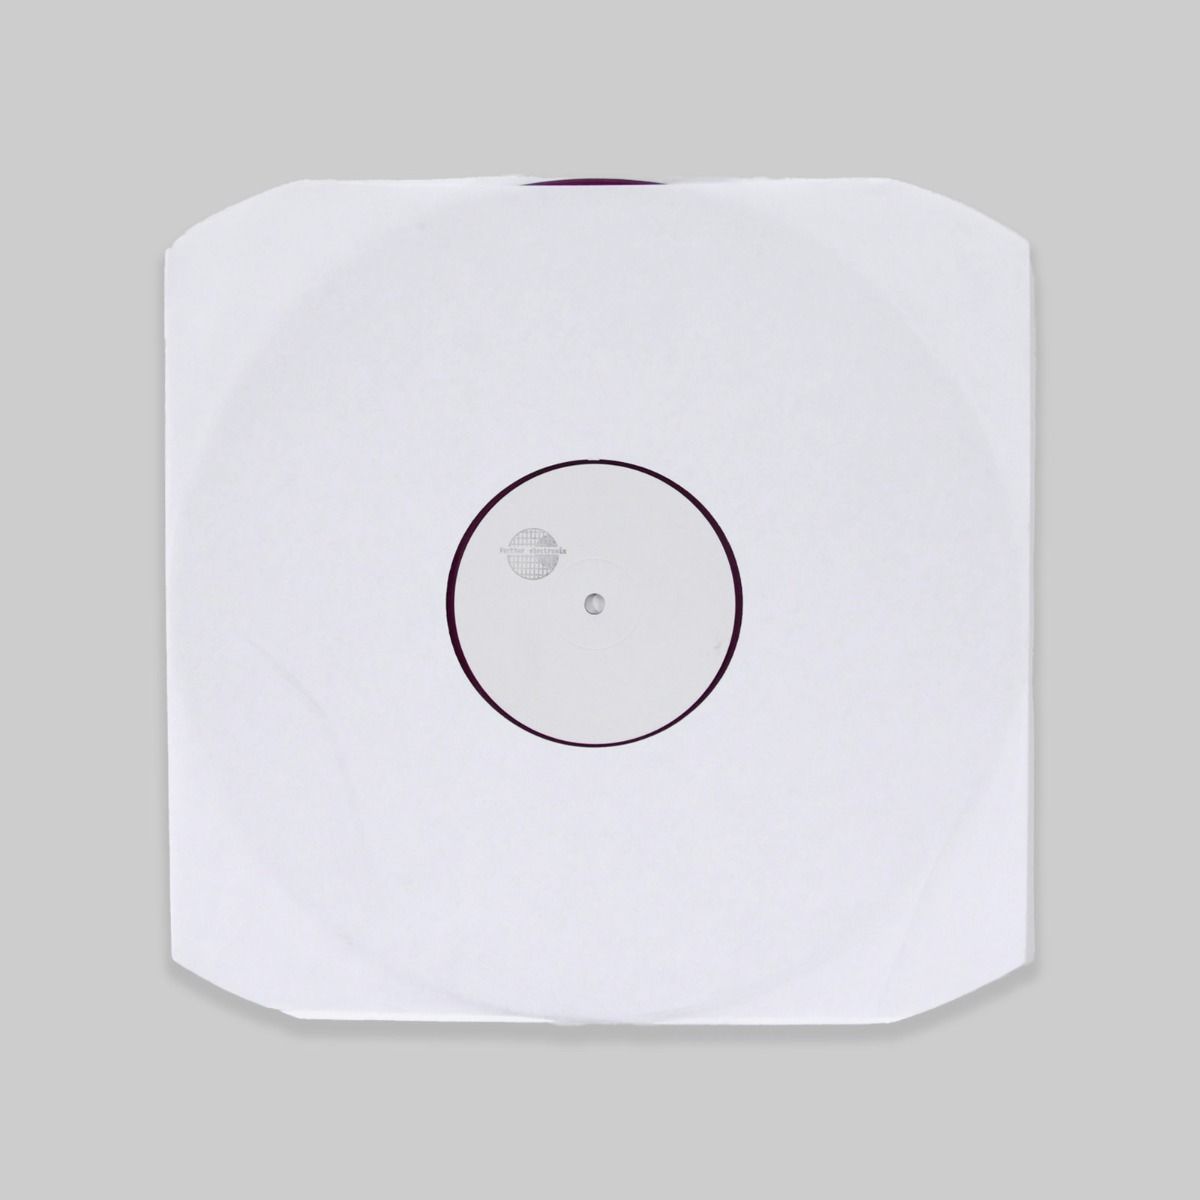 Brainwaltzera – Alepoch 12" (Violet Transparent Vinyl)